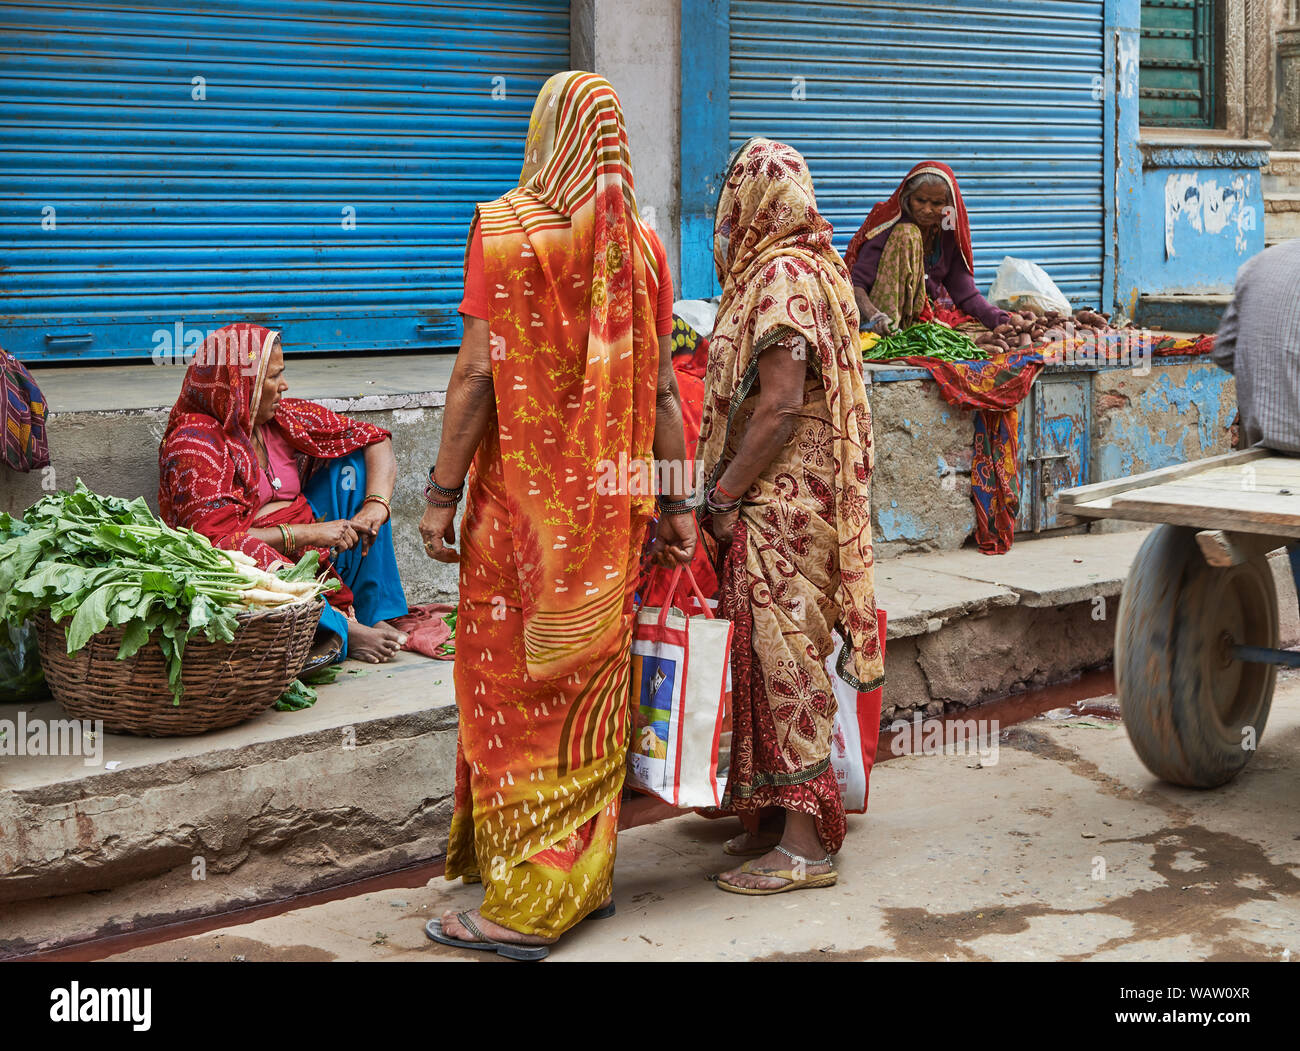 La vida en la calle, la gente de Nawalgarh Foto de stock